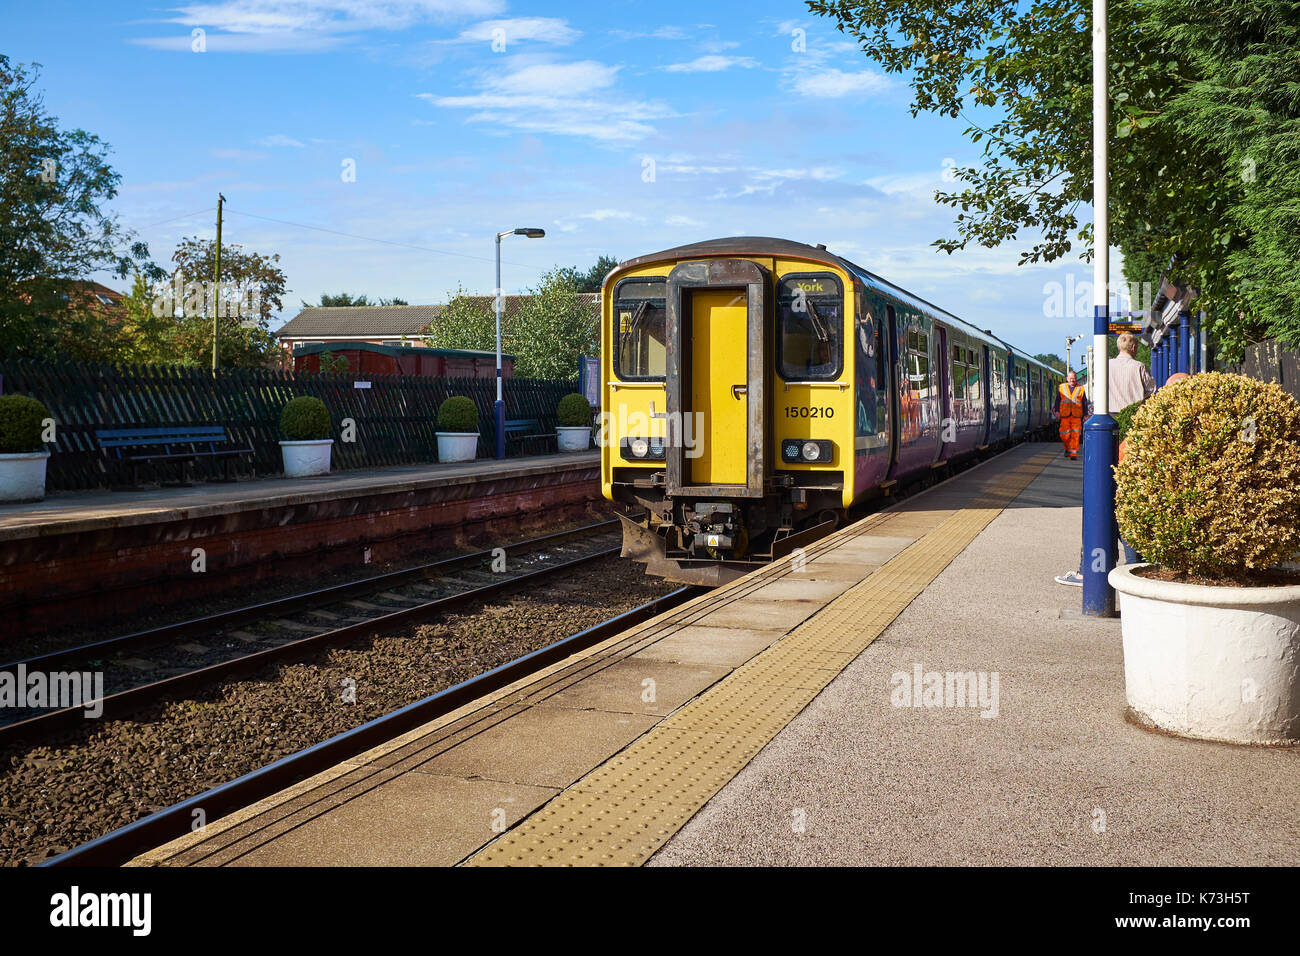 La British Rail Class 150 "stampante" diesel multiple-unità (DMU DMU;) arrivando alla stazione Poppleton, York, Regno Unito in una giornata di sole. Foto Stock